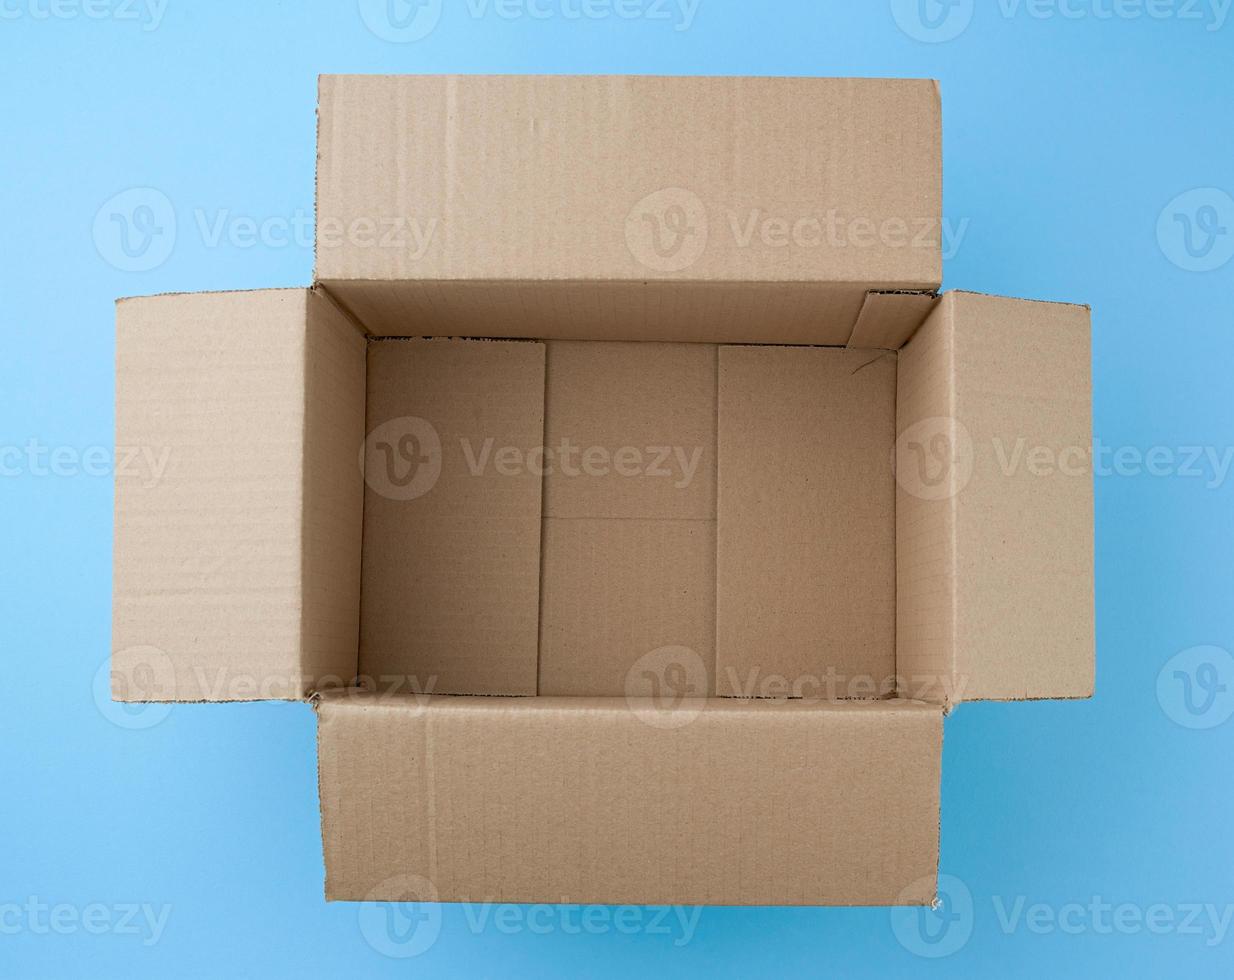 abrir caixa de papelão quadrada marrom vazia para transporte e embalagem de mercadorias foto